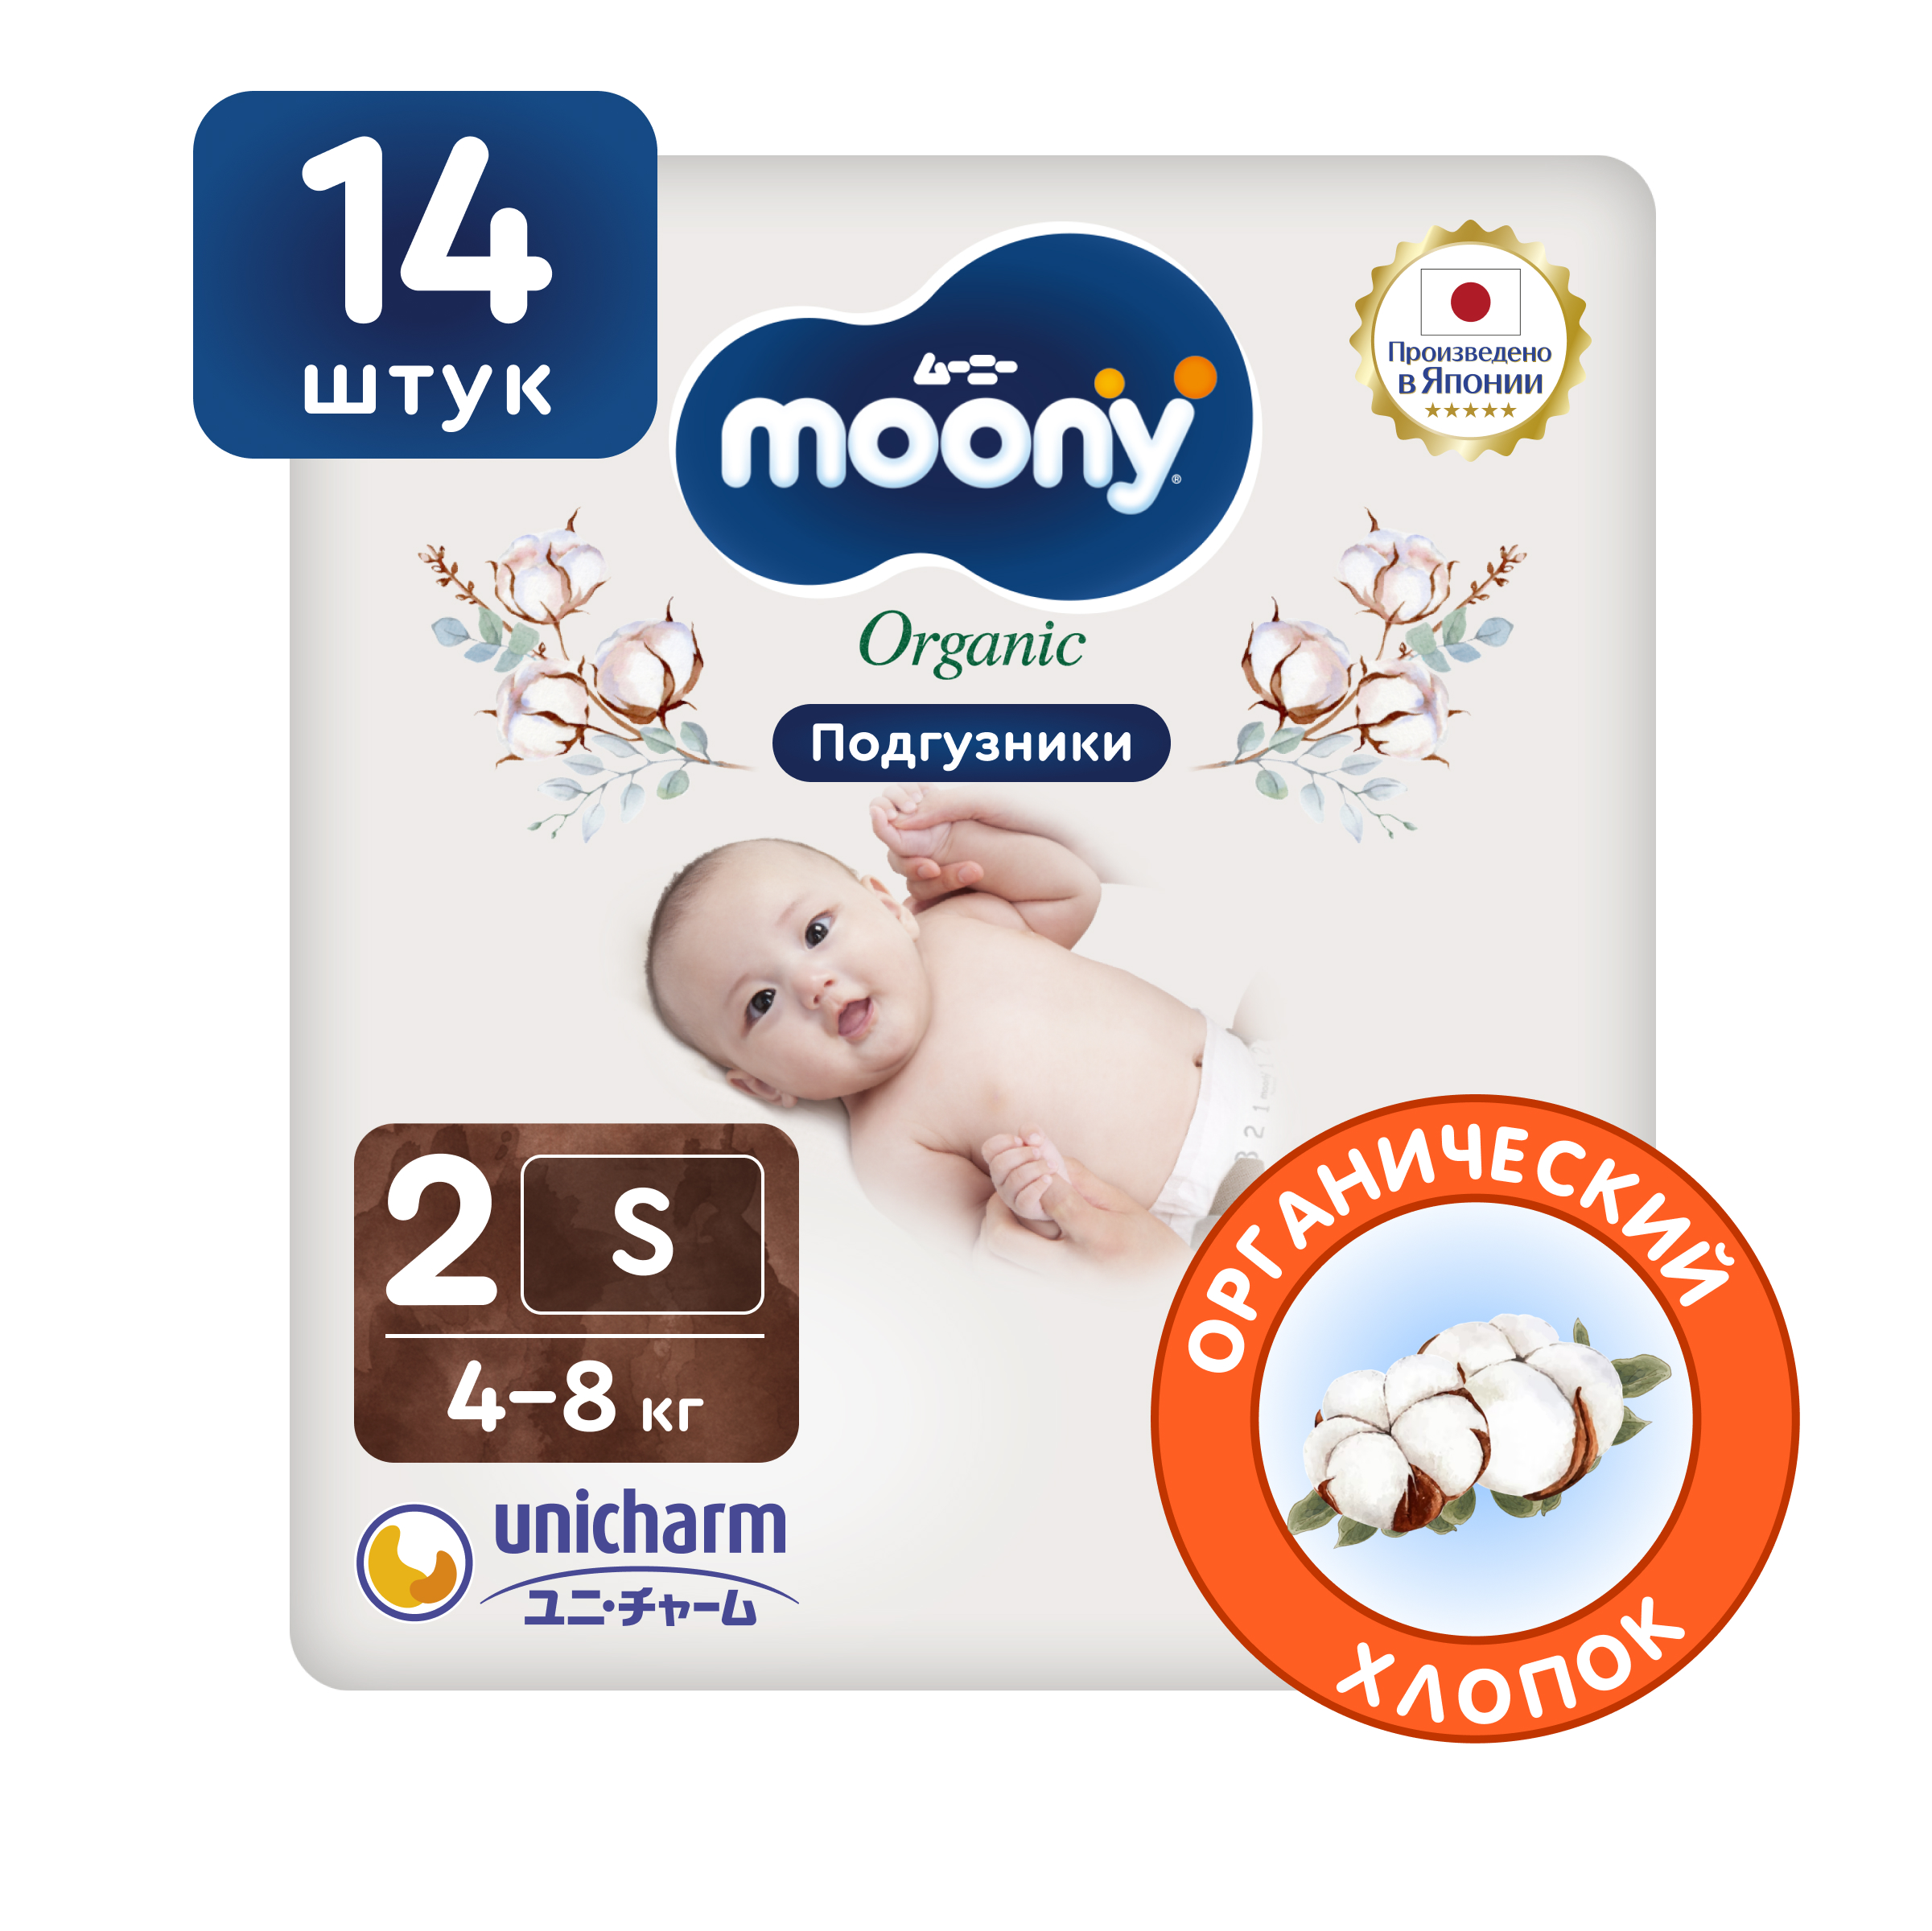 Японские подгузники для новорожденных Moony Organic 2 S, 4-8 кг, 14 шт linea di sette комбинезон дуб ok organic